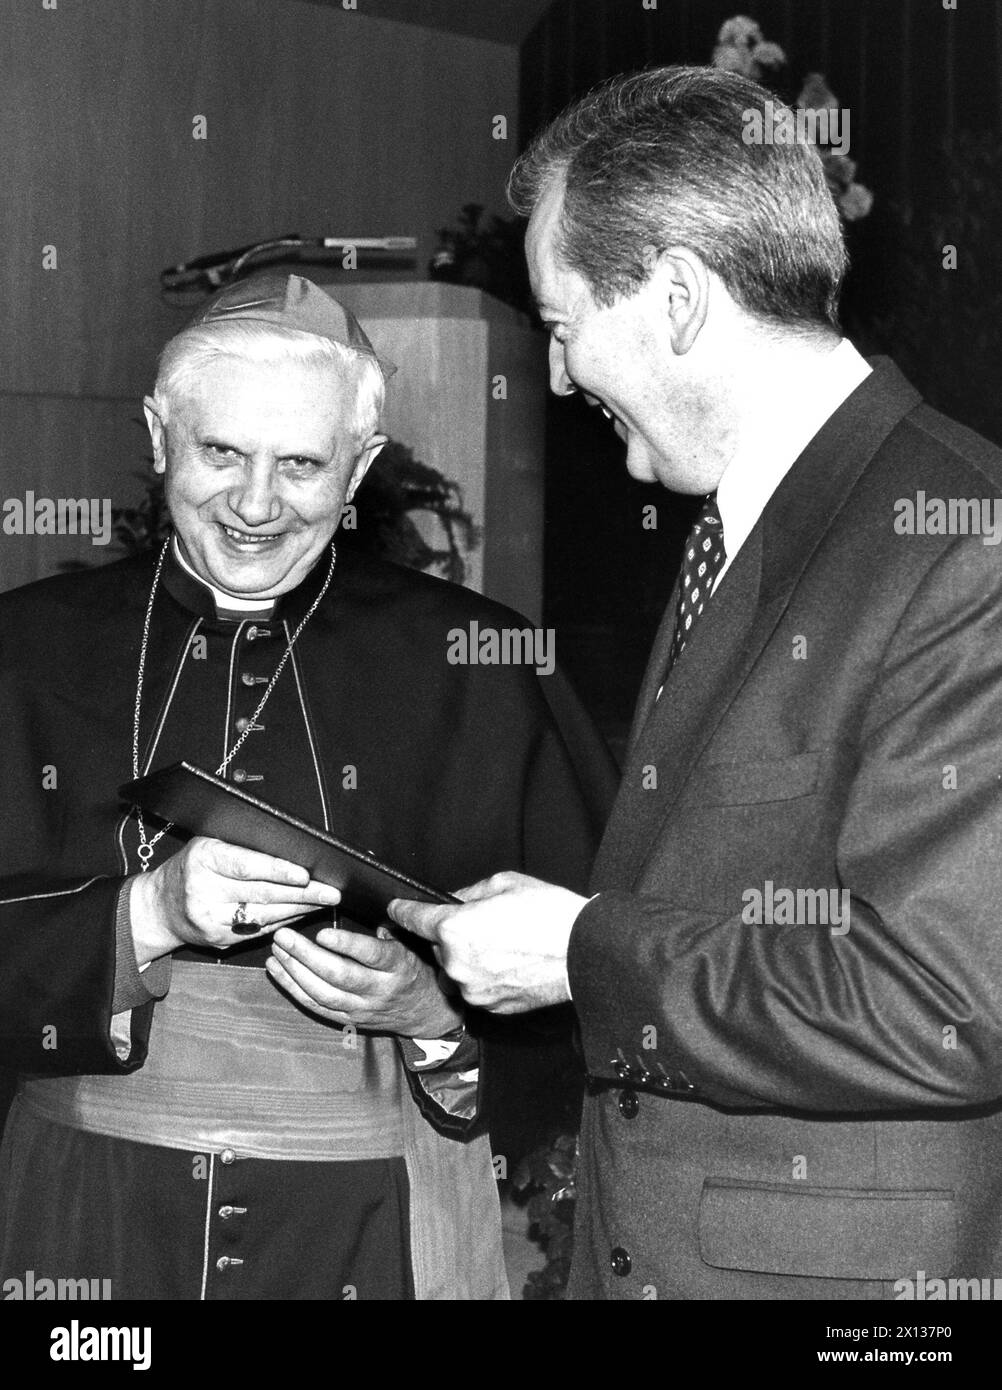 Vienne le 9 mars 1991 : le Cardinal Joseph Ratzinger (à gauche) a reçu le 'Grand Prix Léopold Kunschak' du ministre des Affaires étrangères Alois Mock (à droite) - 19910309 PD0005 - Rechteinfo : Rights Managed (RM) Banque D'Images